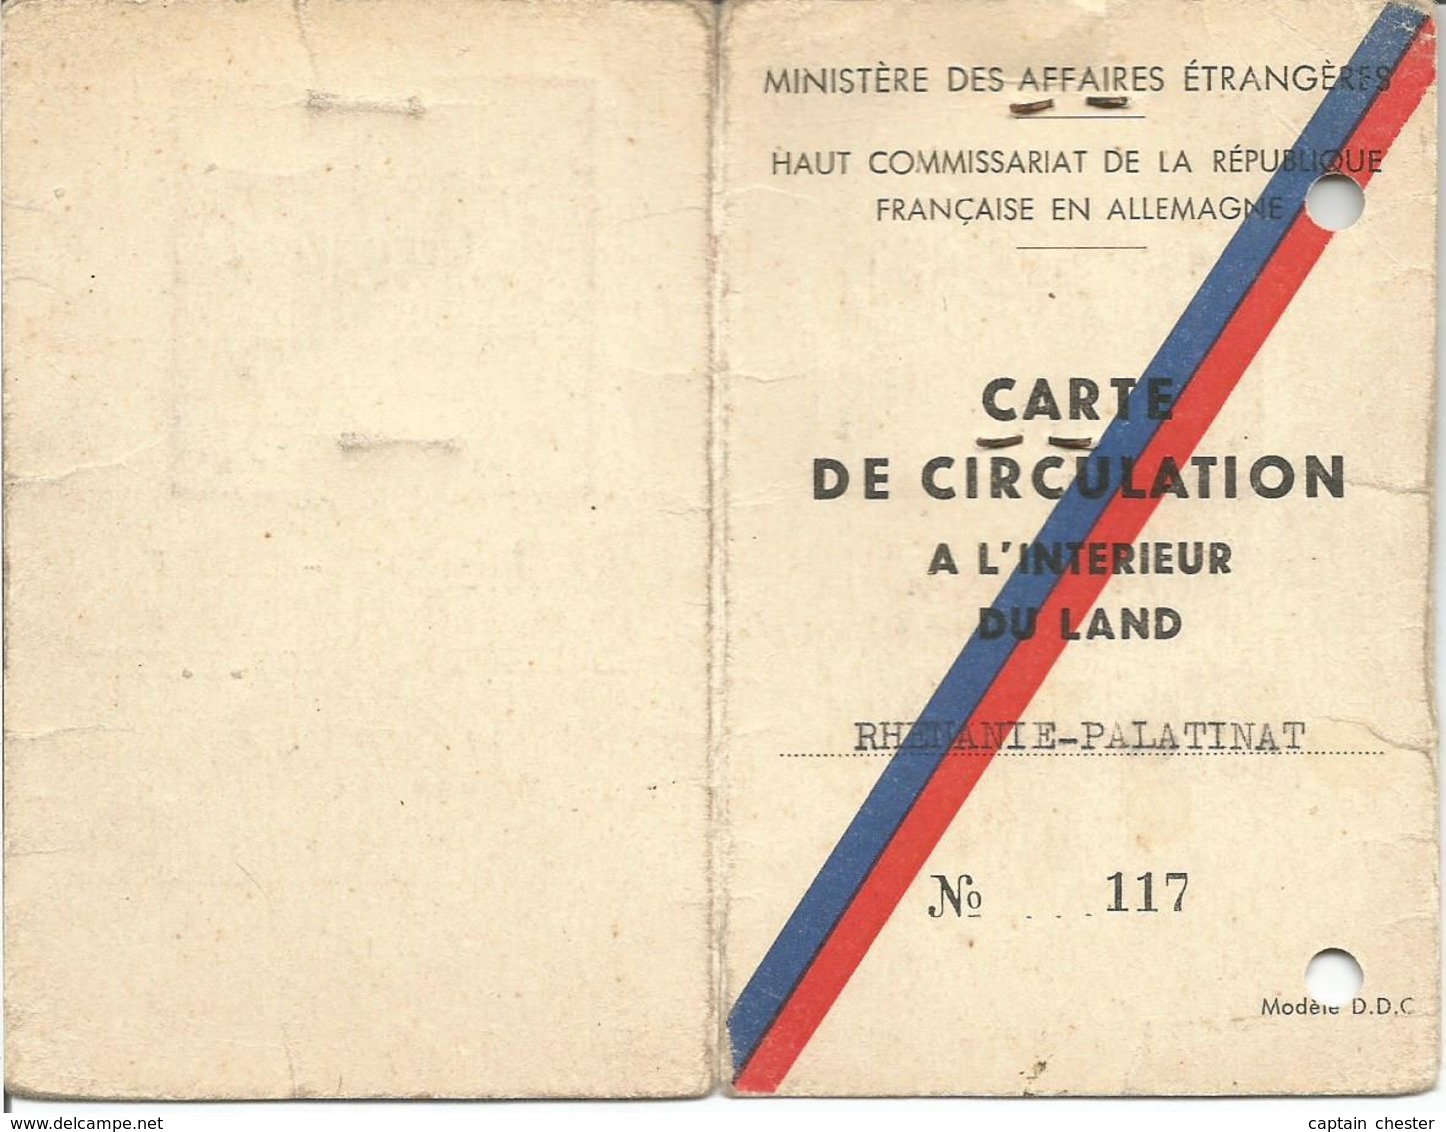 Haut Commissariat De La République Française En Allemagne - Carte De Circulation Land De Rhénanie Palatinat 1951 - Documents